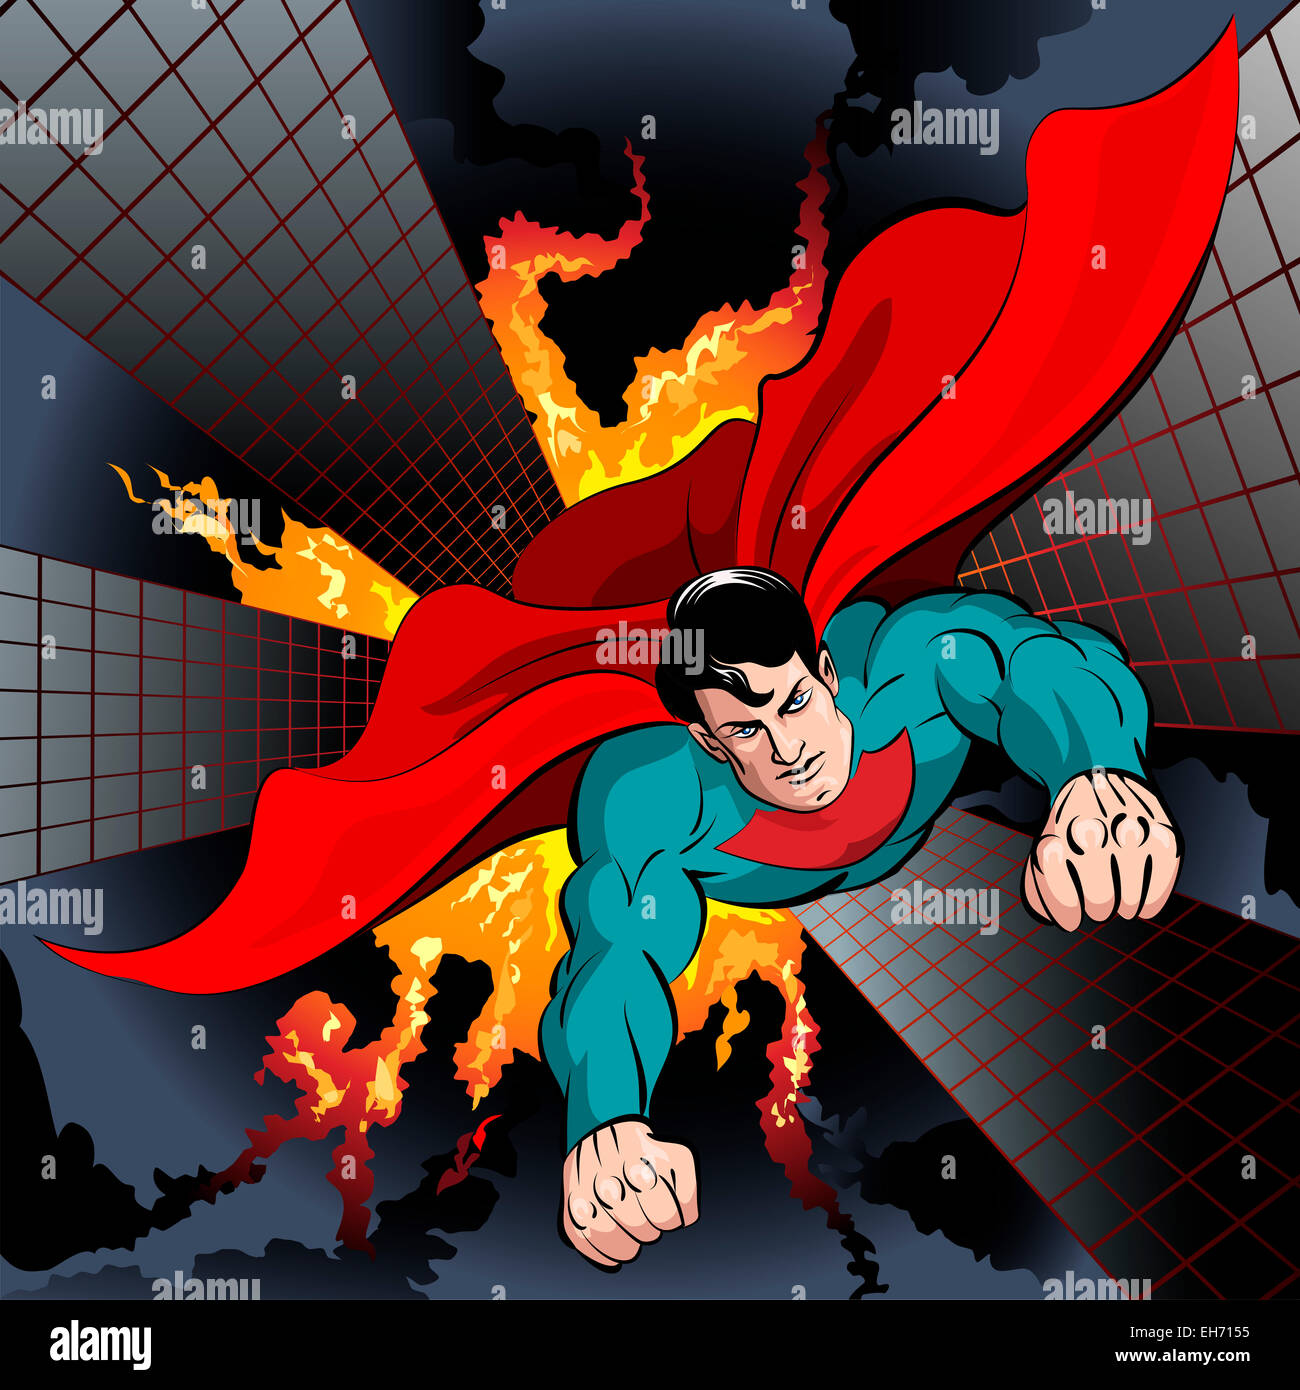 Illustrazione con il supereroe battenti per la lotta alla criminalità e proteggere la città disegnata in stile fumetto Foto Stock